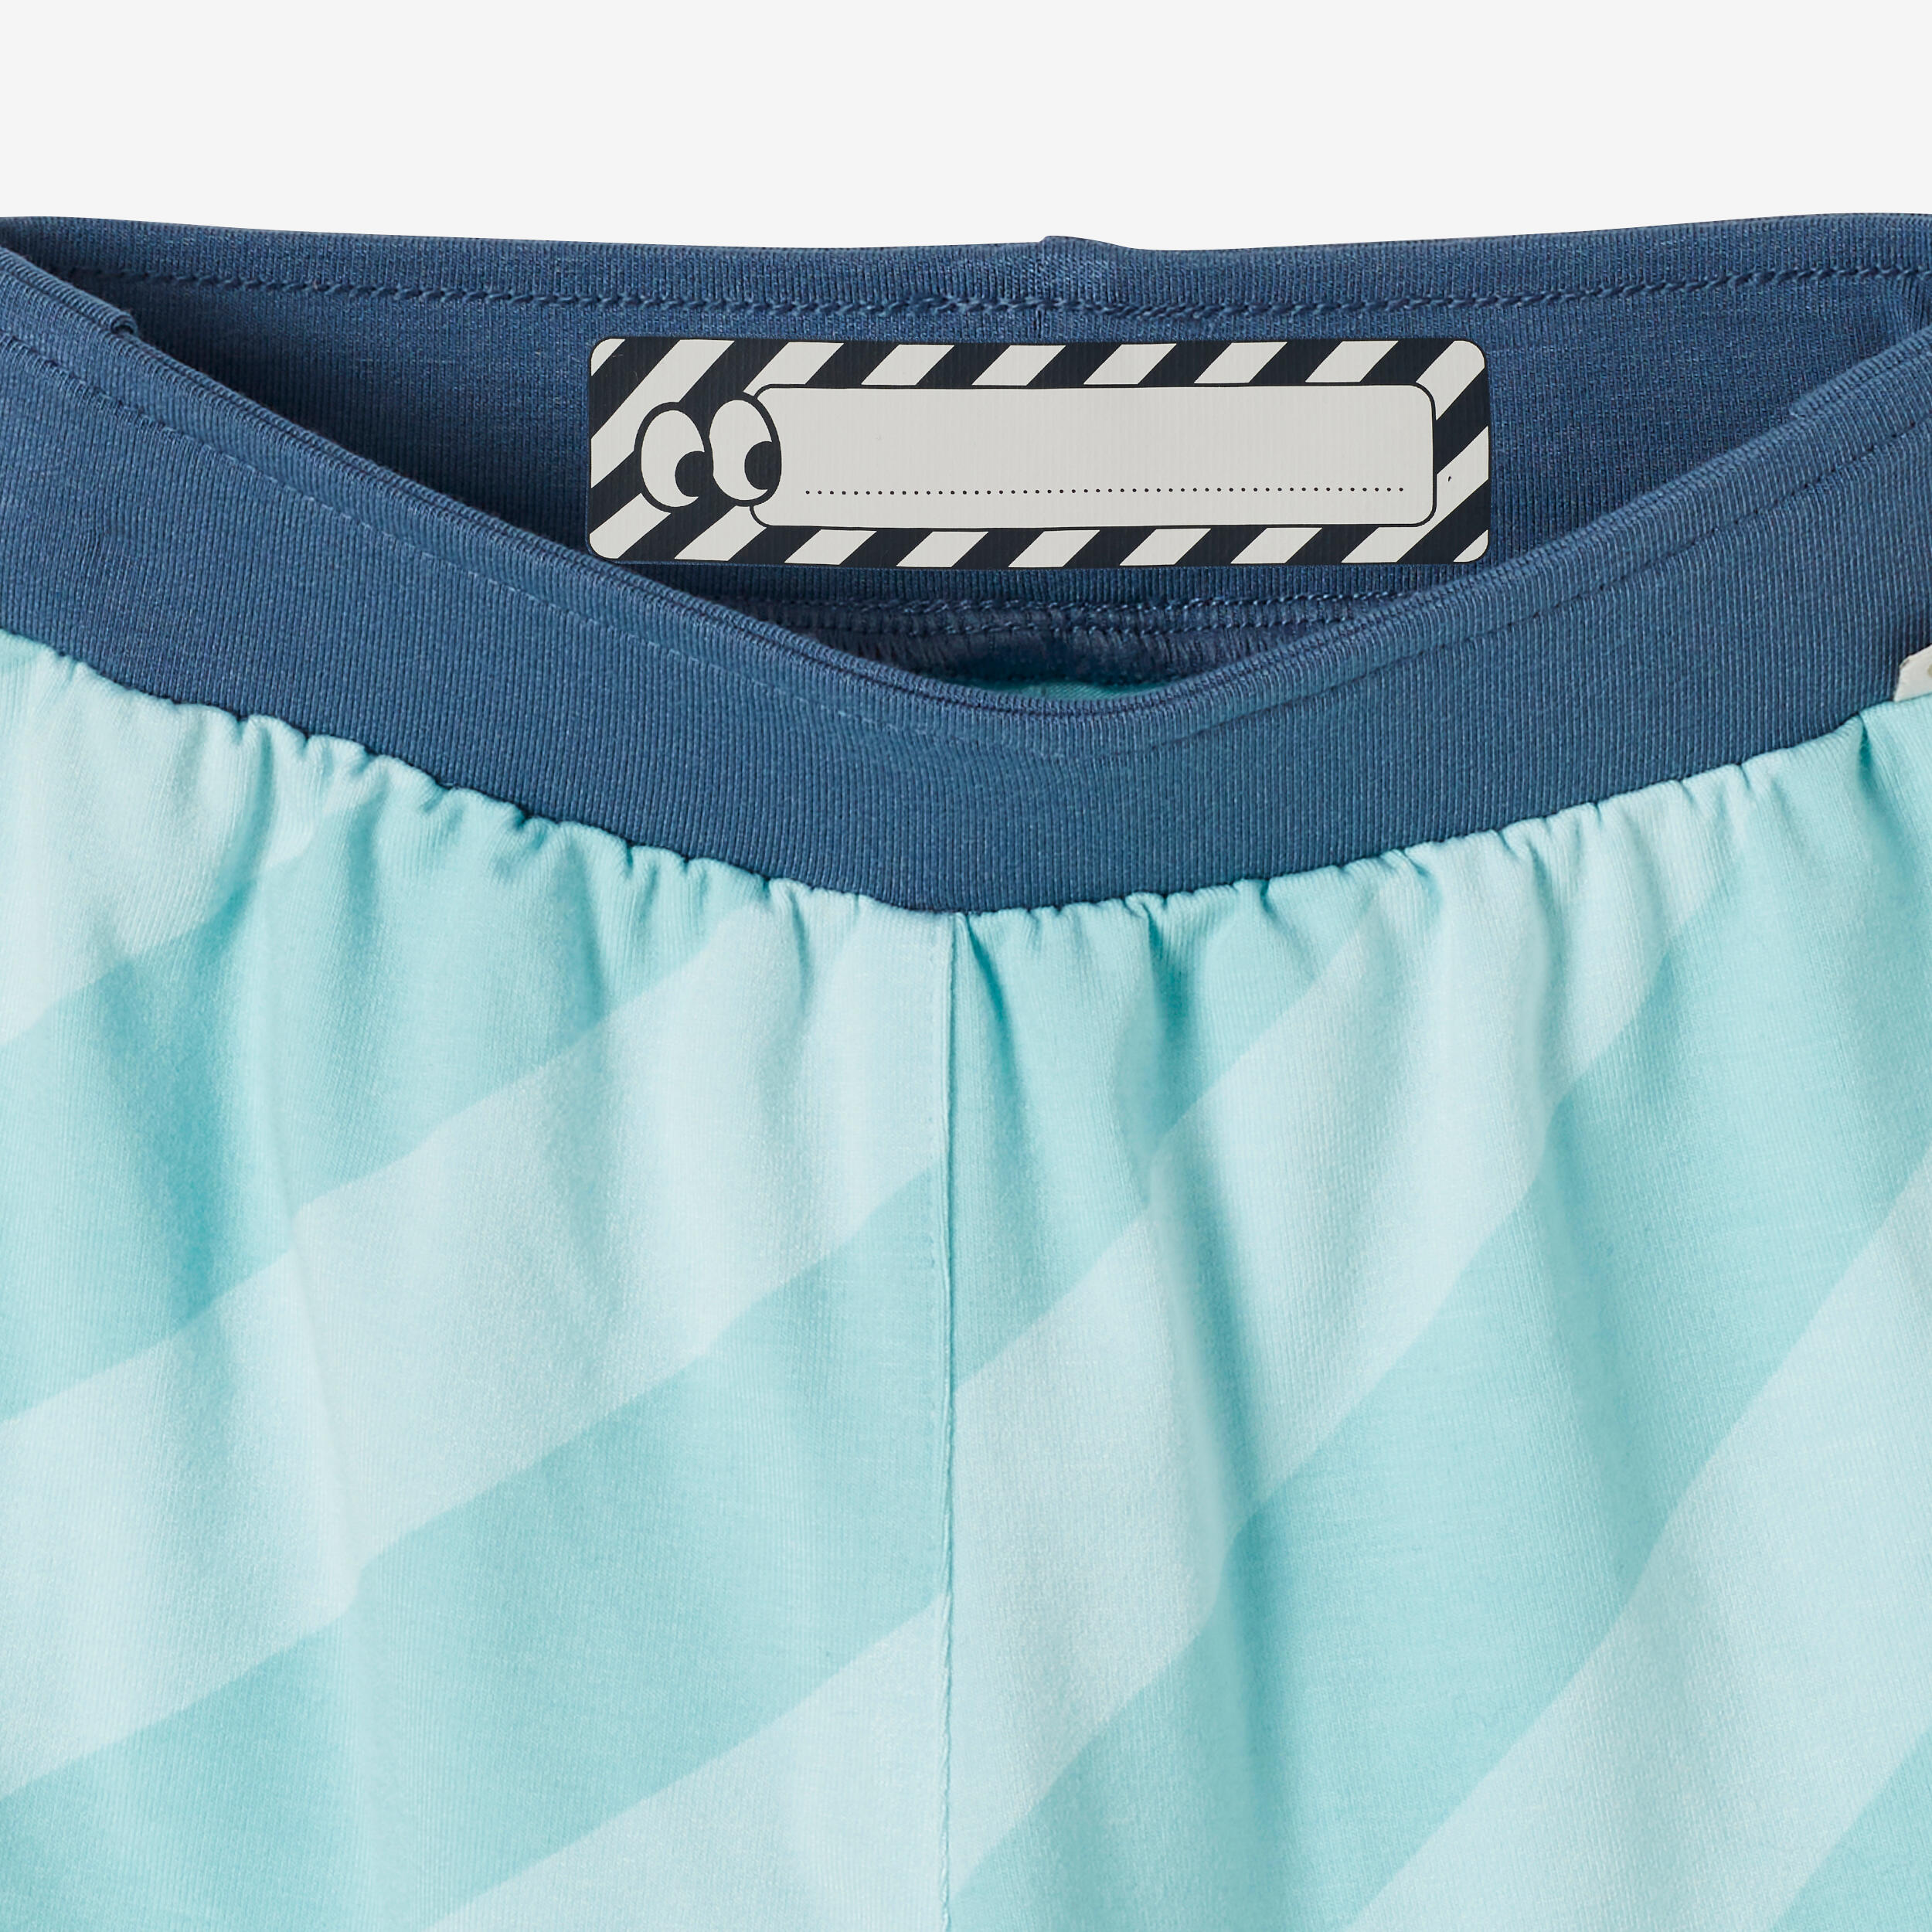 Kids' Breathable Adjustable Shorts 500 - Blue Stripes 7/8